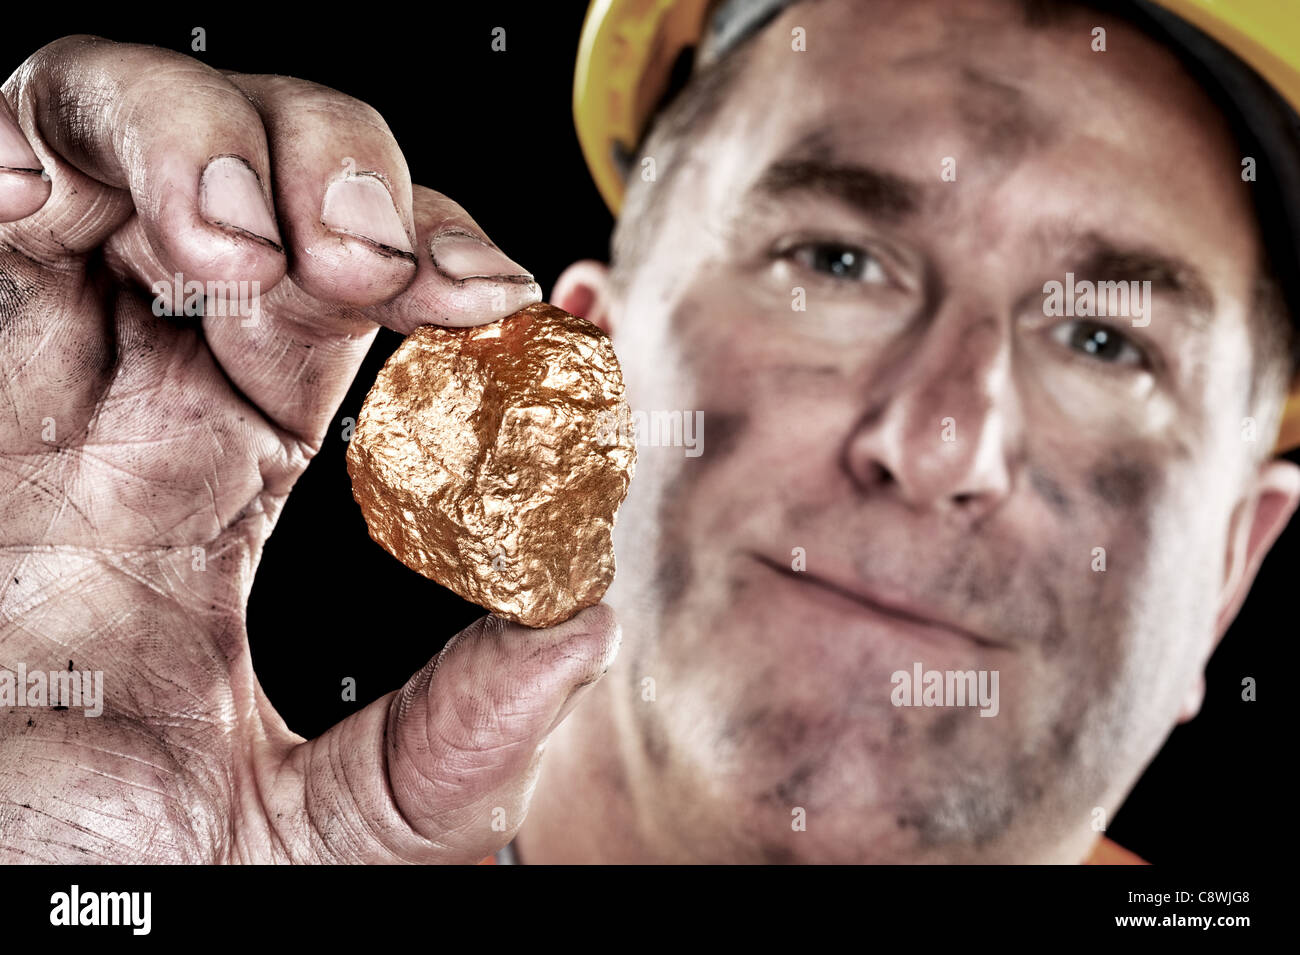 Un minero de oro muestra un Golden Nugget recién excavada en una mina. Foto de stock